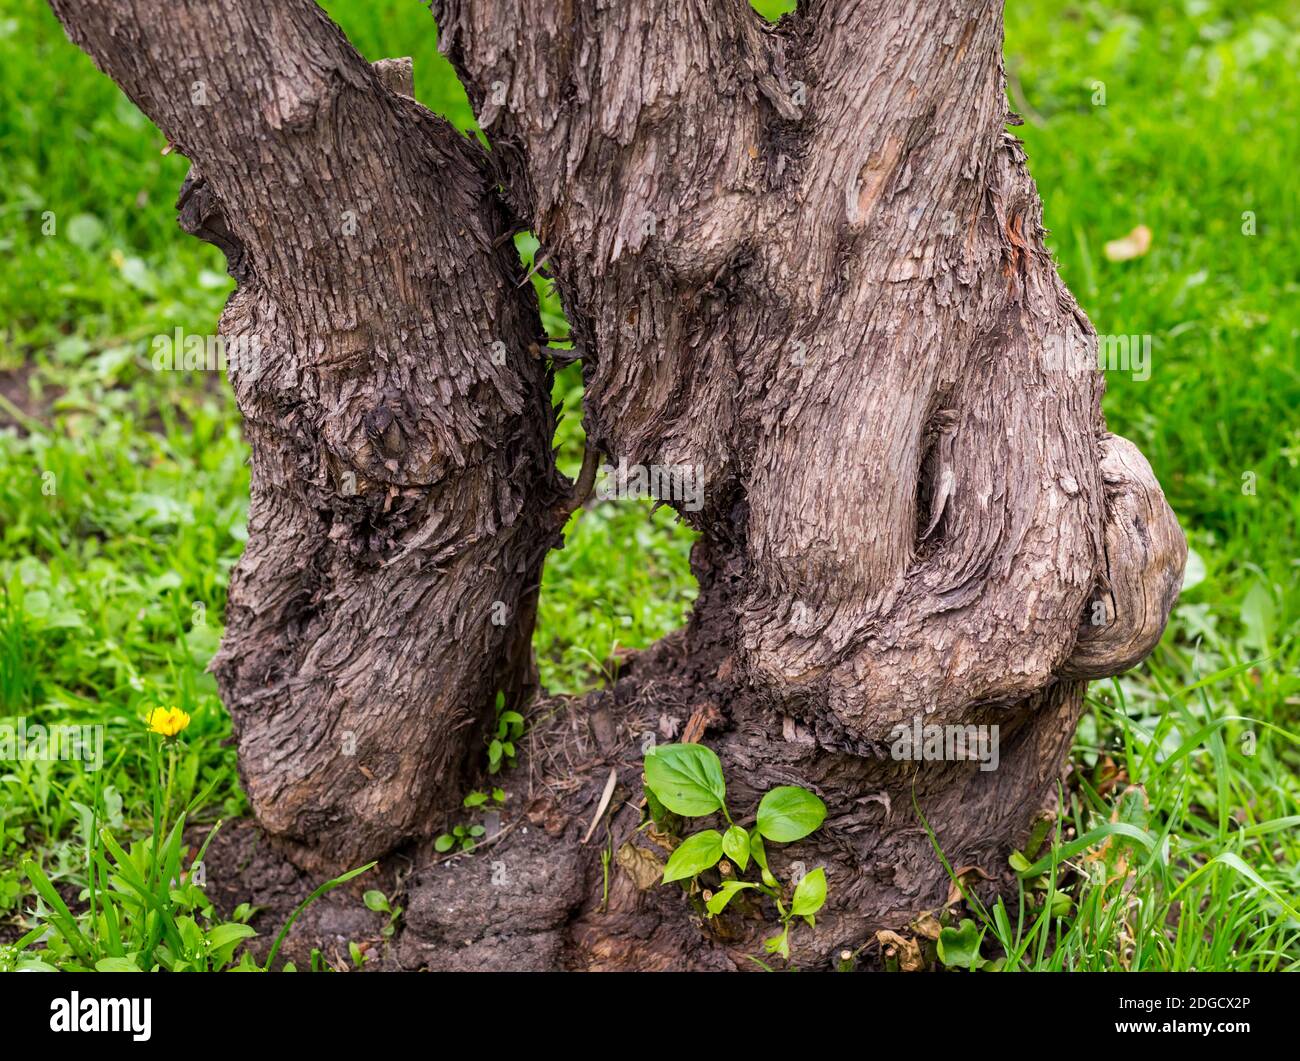 Magico vecchio albero branchy piegato con una corteccia marrone sopra uno sfondo di erba verde Foto Stock